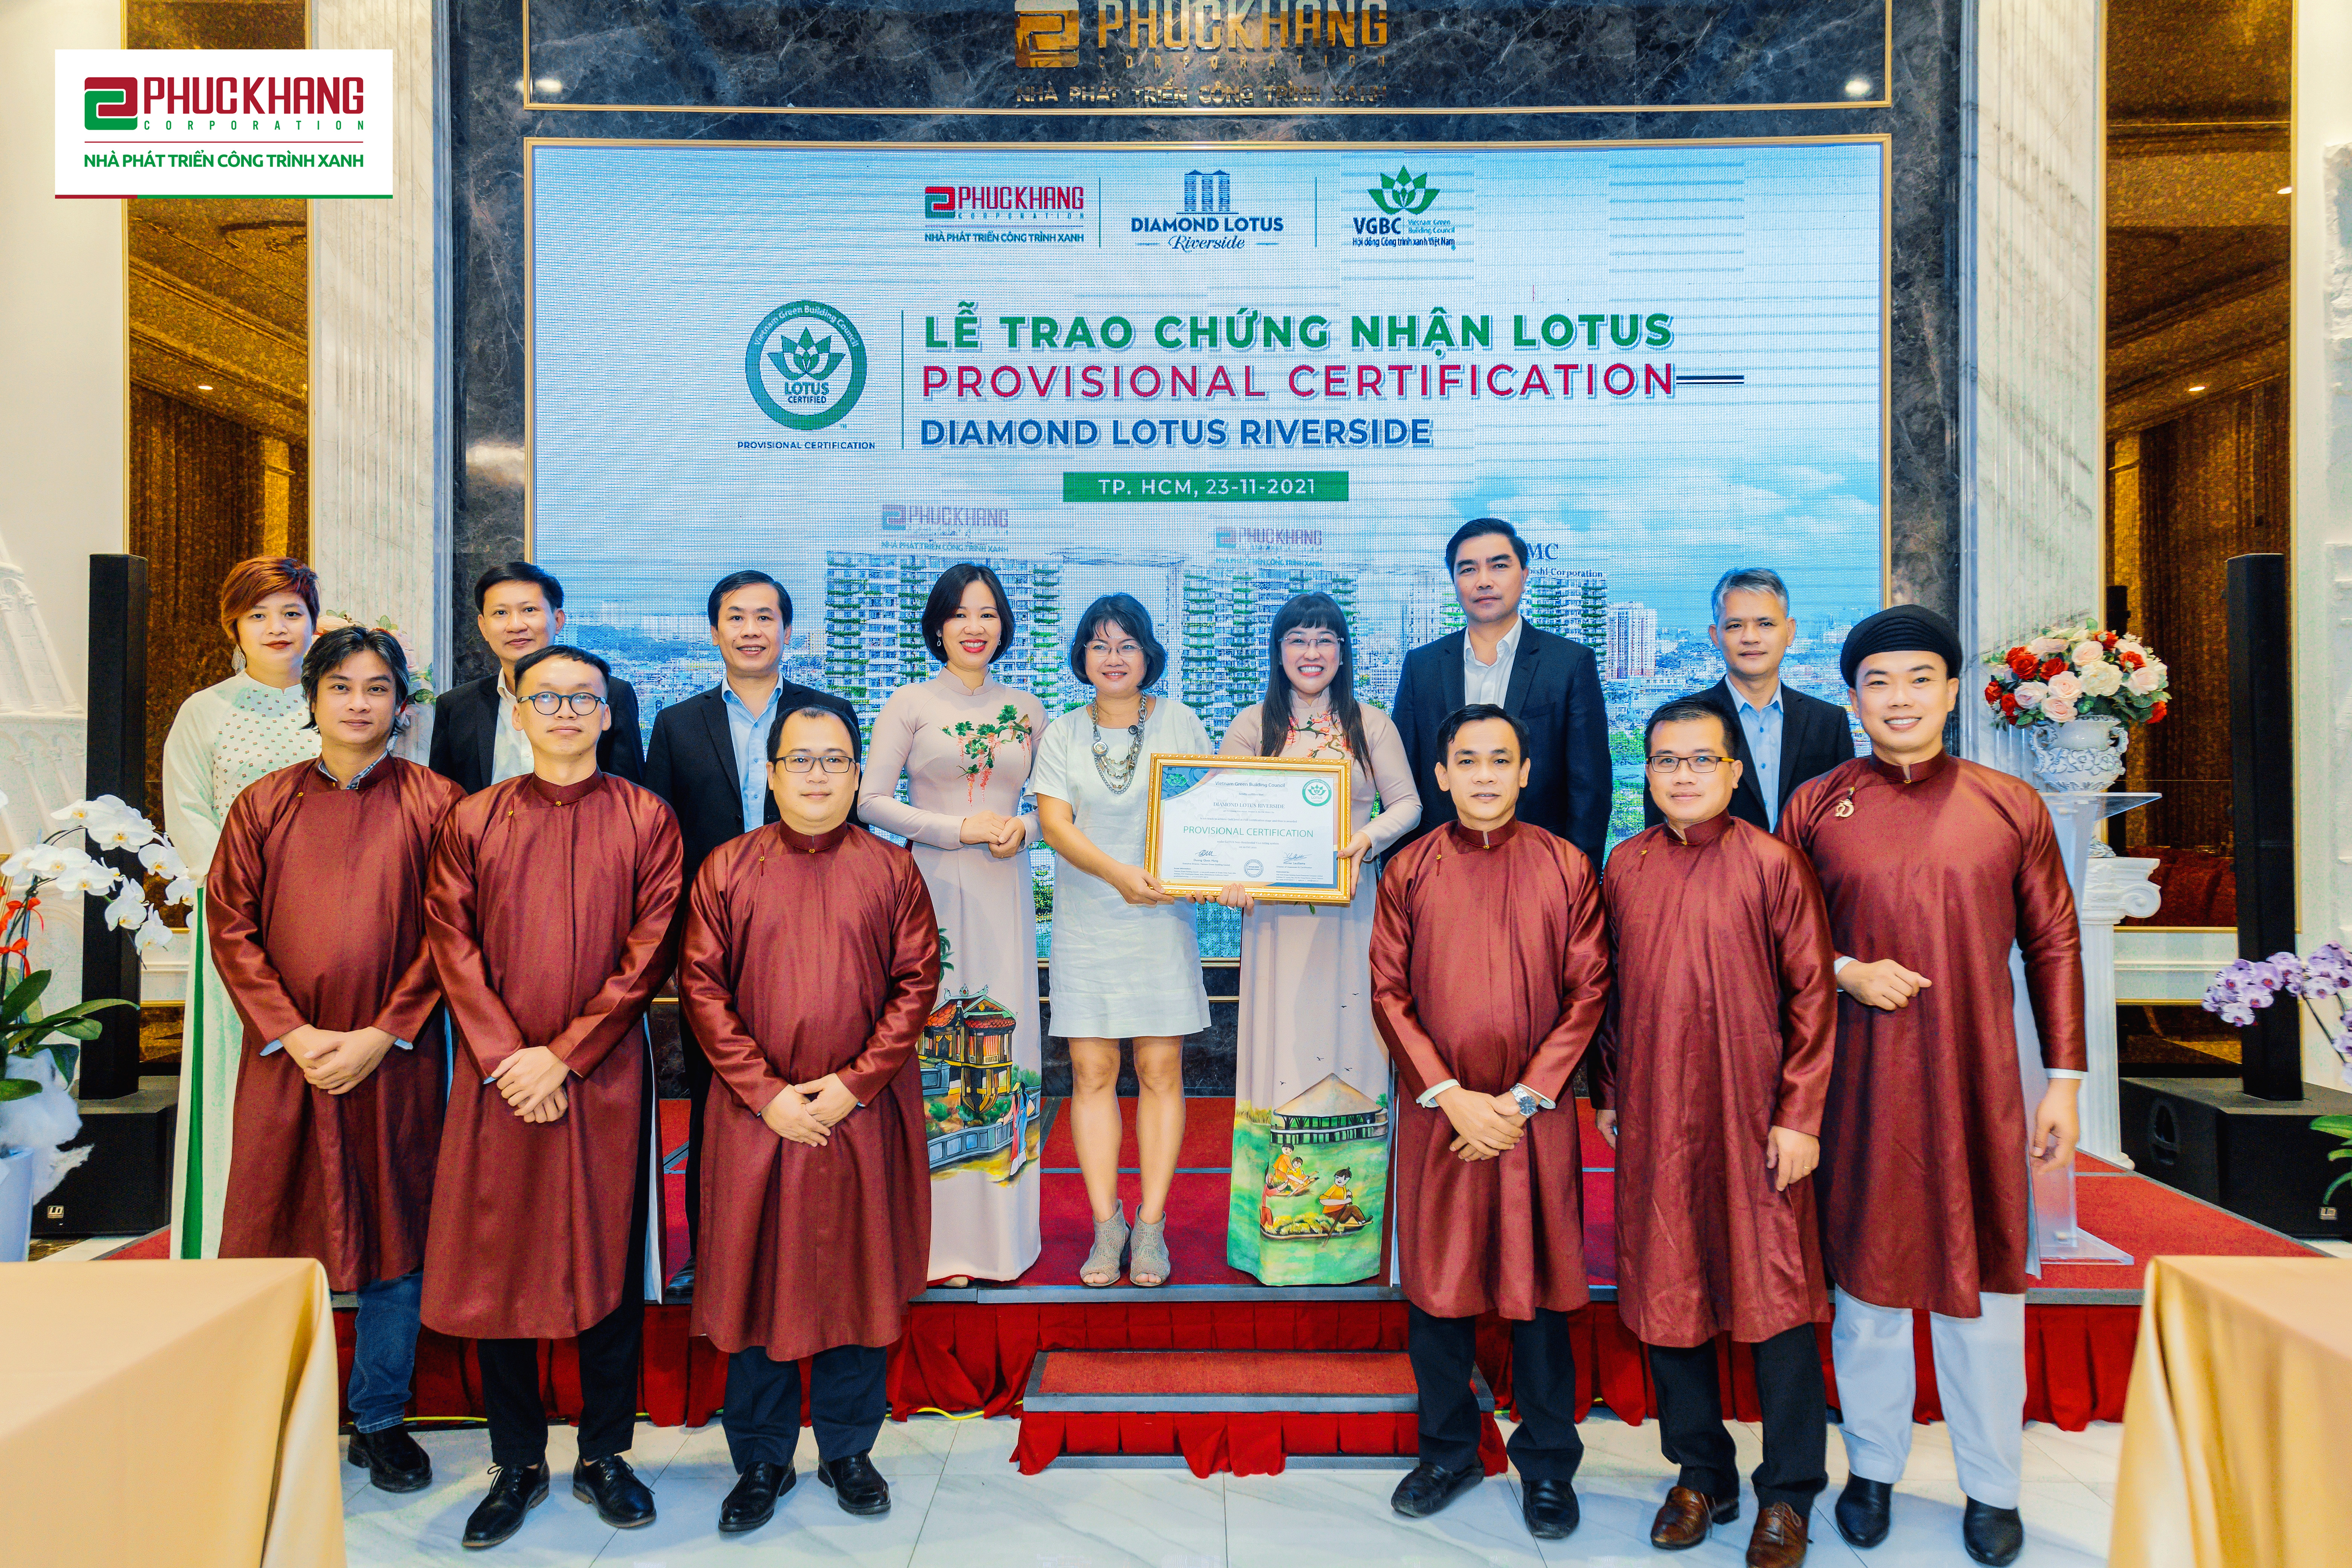 Đại diện Ban l&atilde;nh đạo, cố vấn v&agrave; quản l&yacute; cấp cao của Phuc Khang Corporation vui mừng ch&agrave;o đ&oacute;n Lễ trao chứng nhận LOTUS tạm thời cho CTX Diamond Lotus Riverside.